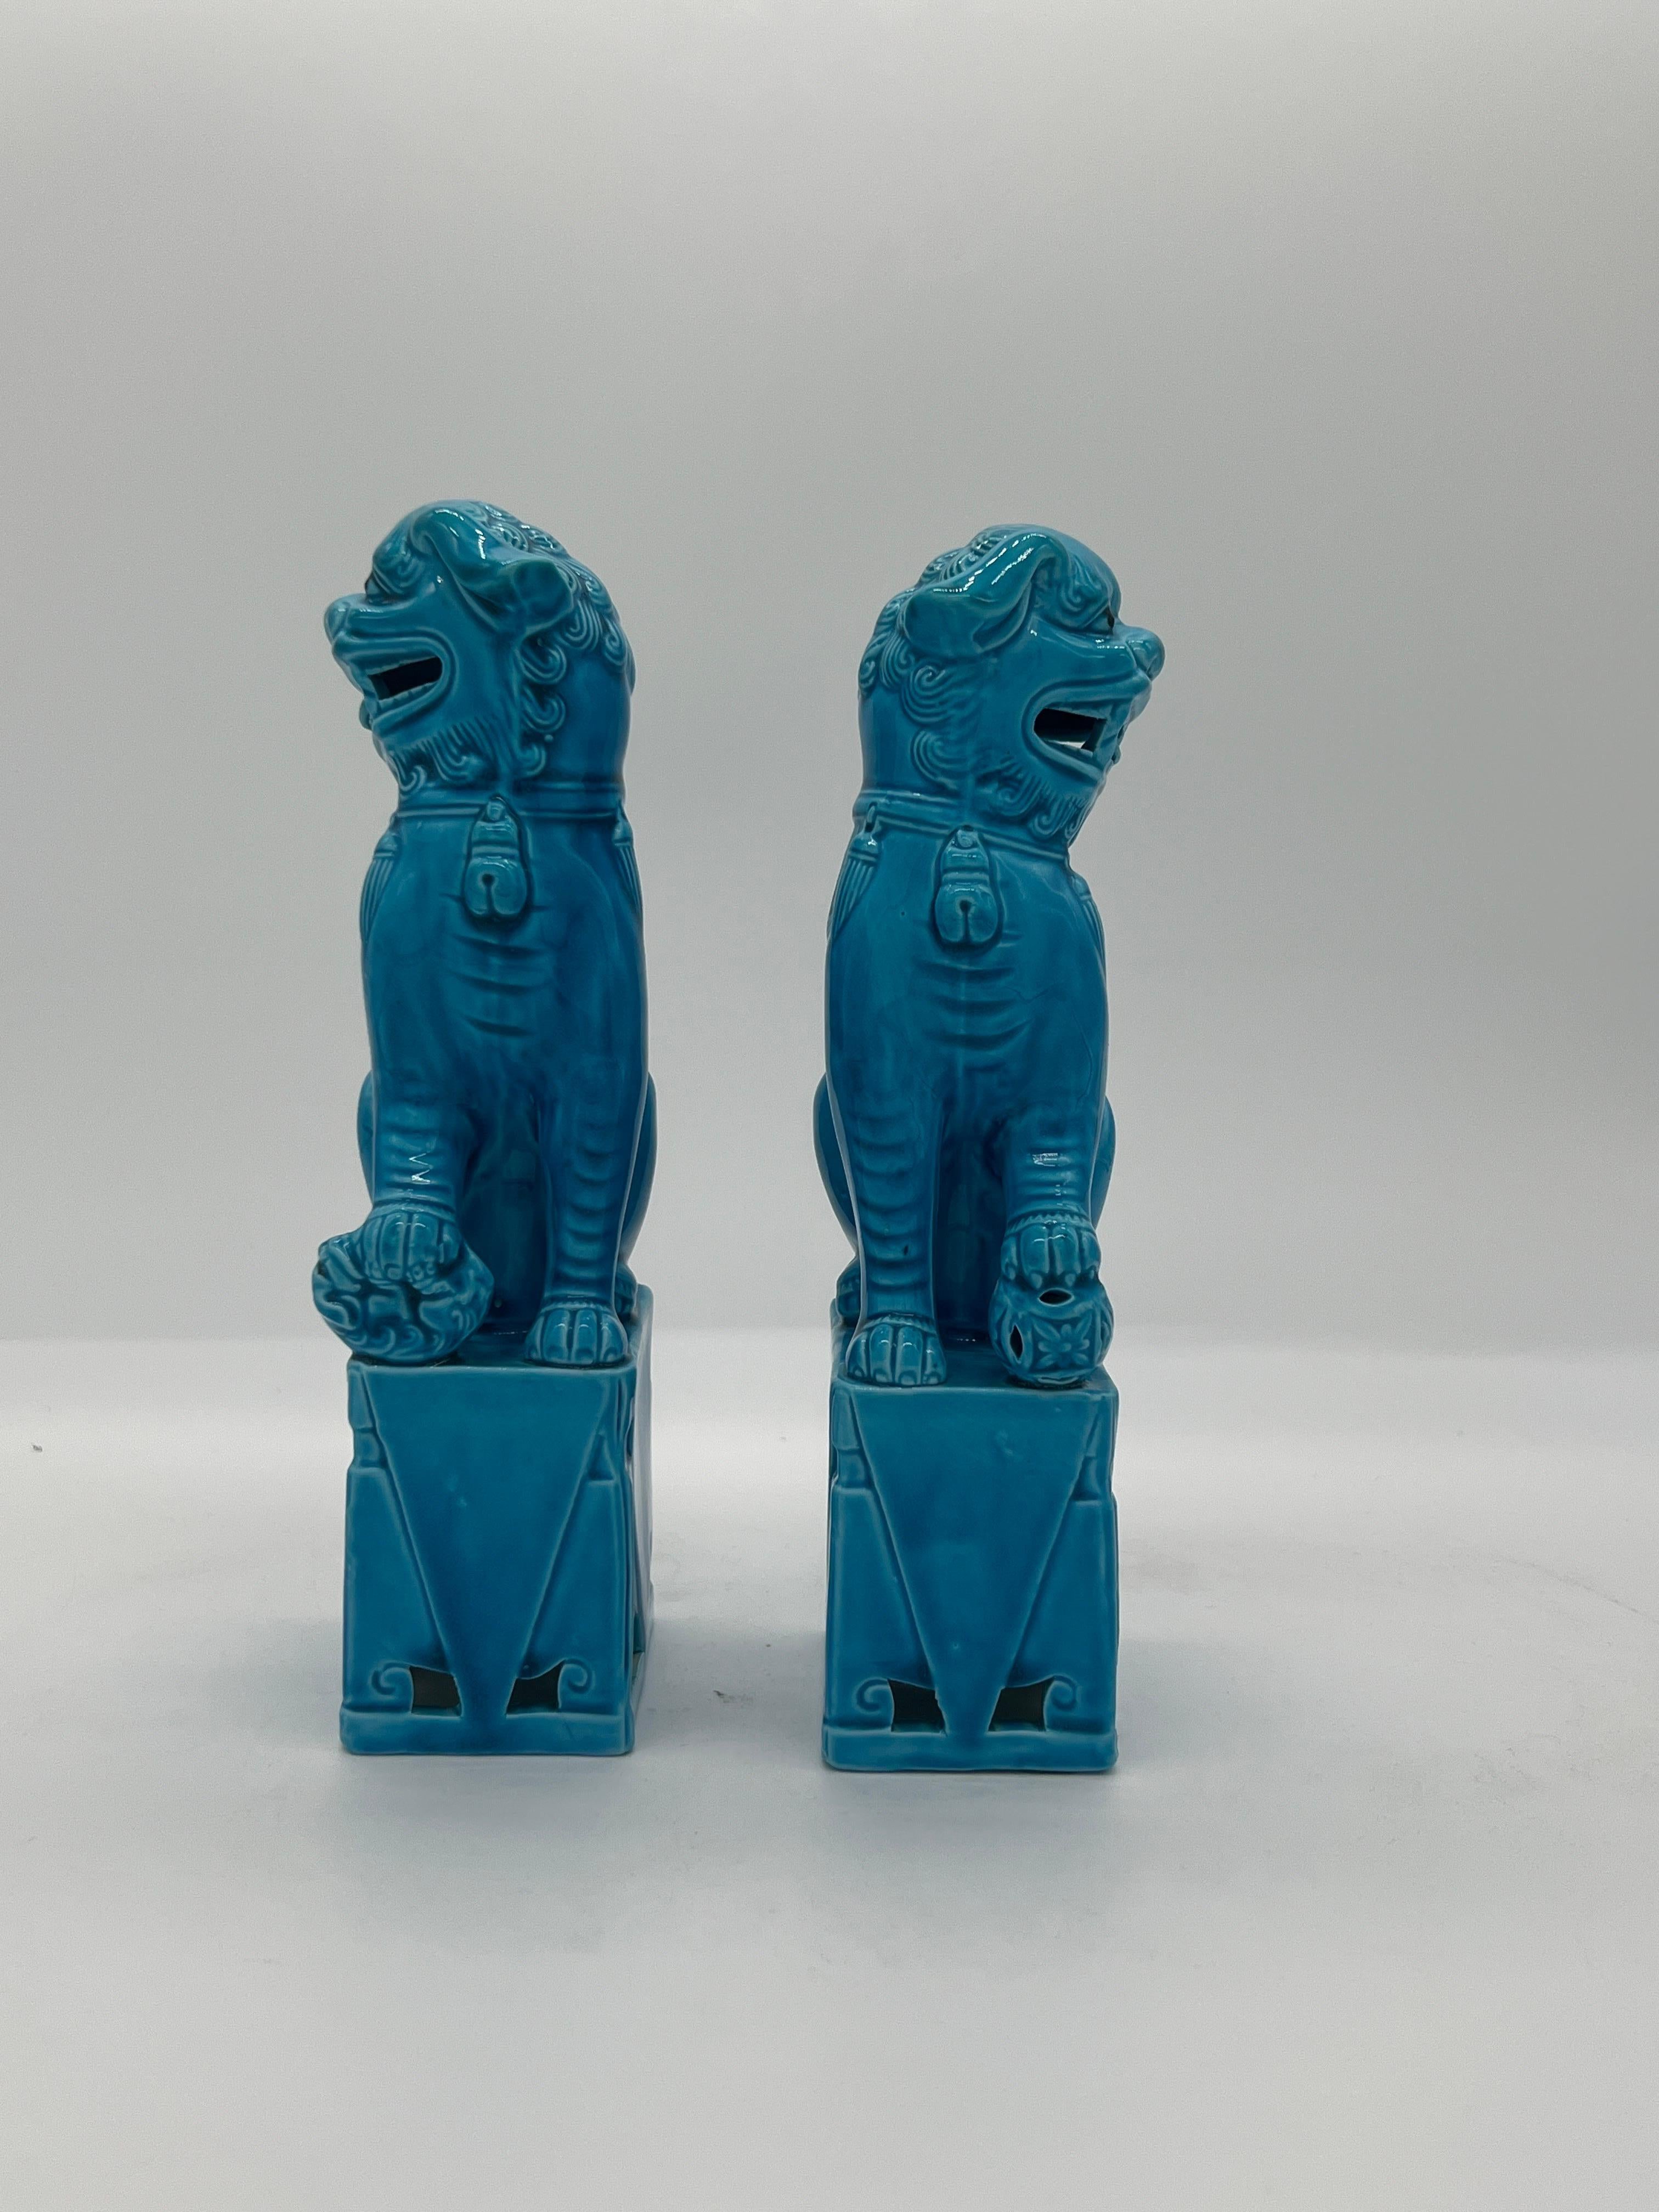 Chinesisch, Mitte des Jahrhunderts. 

Ein Paar türkisblaue Keramikskulpturen von Foo Dogs, wahrscheinlich um 1950 oder 60.